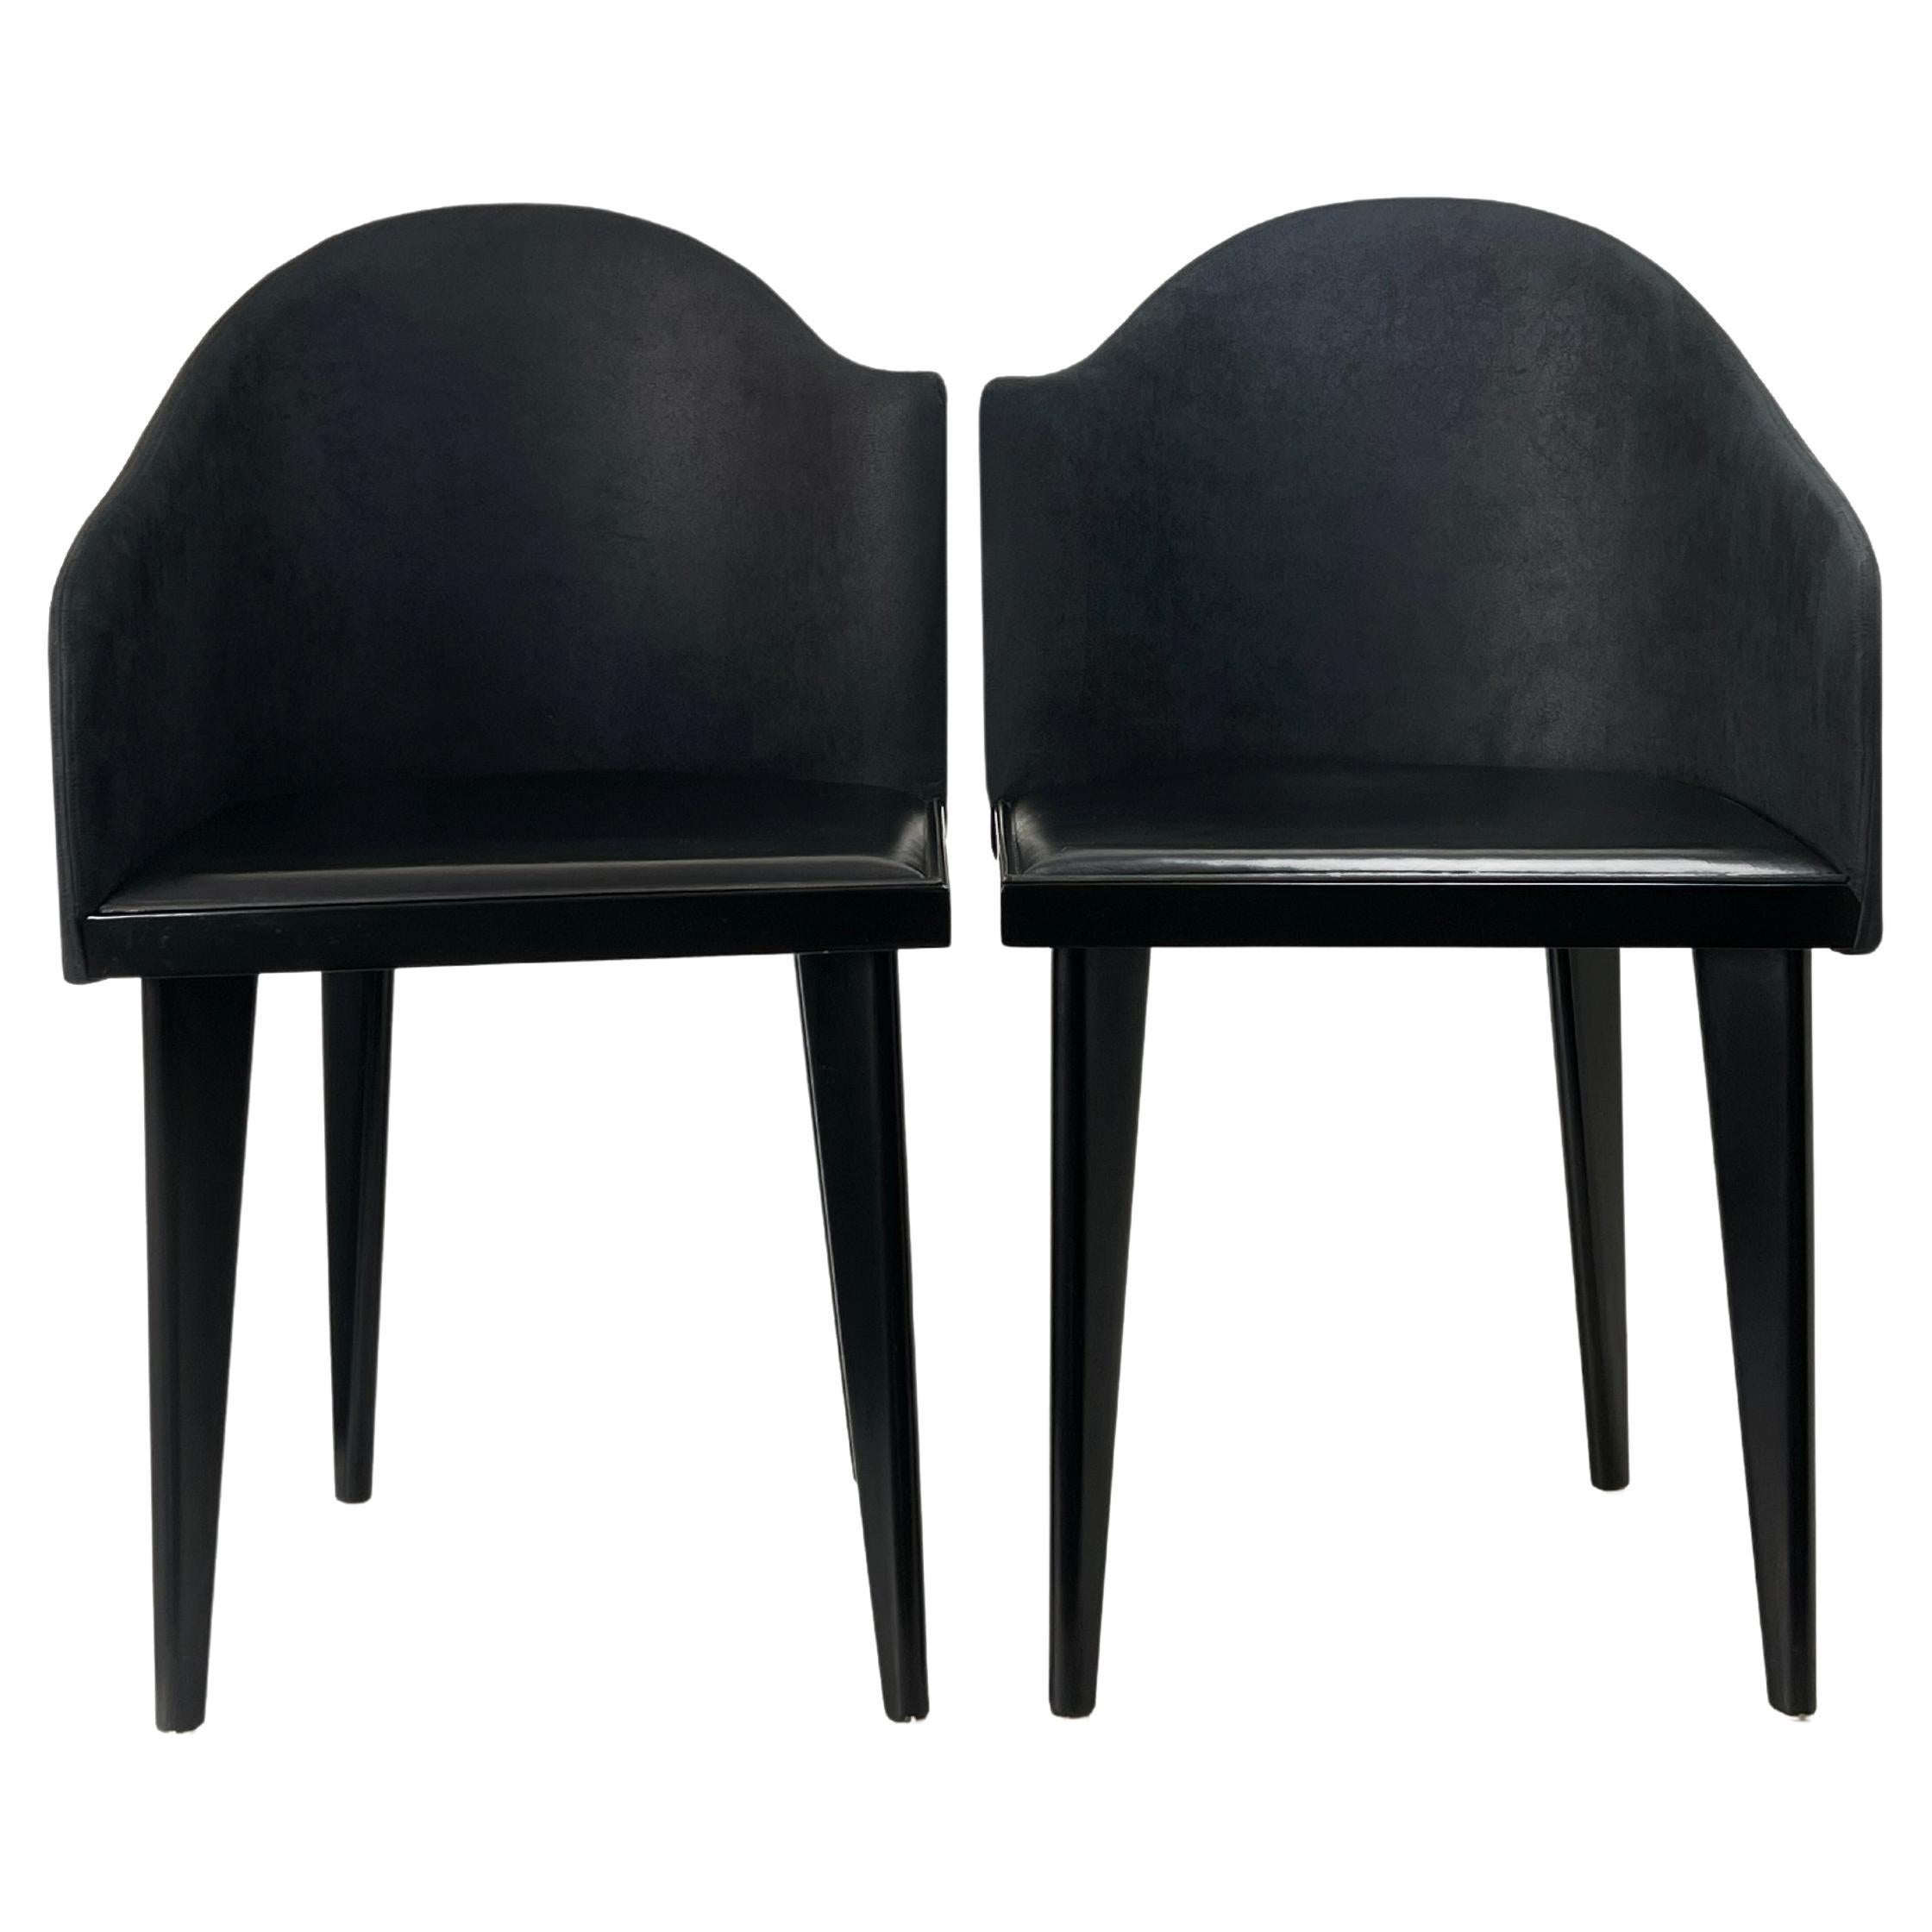 Pair of Toscana Chairs by Piero Sartogo for Saporiti